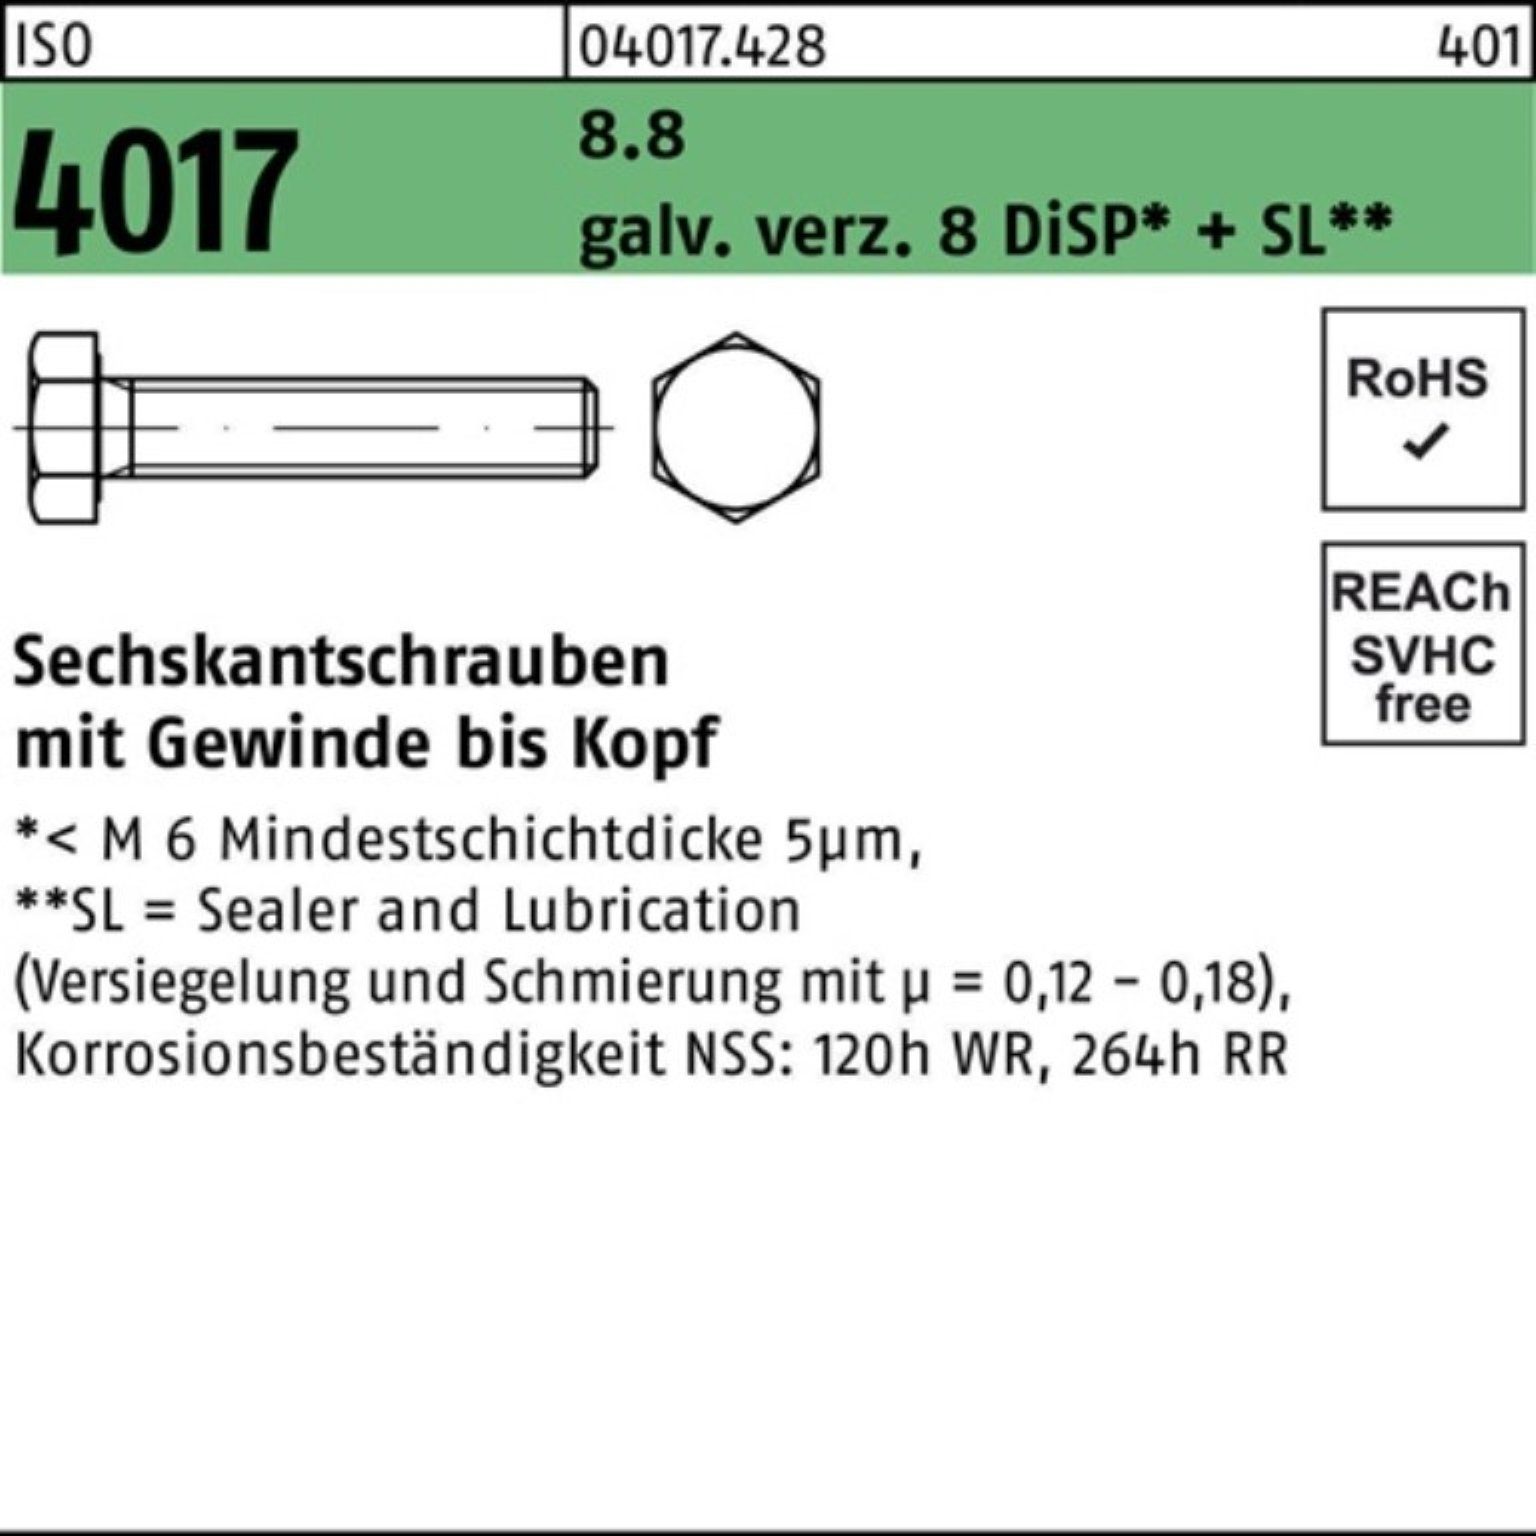 Bufab Sechskantschraube 100er Pack Sechskantschraube ISO 4017 VG M16x 25 8.8 galv.verz. 8 DiSP